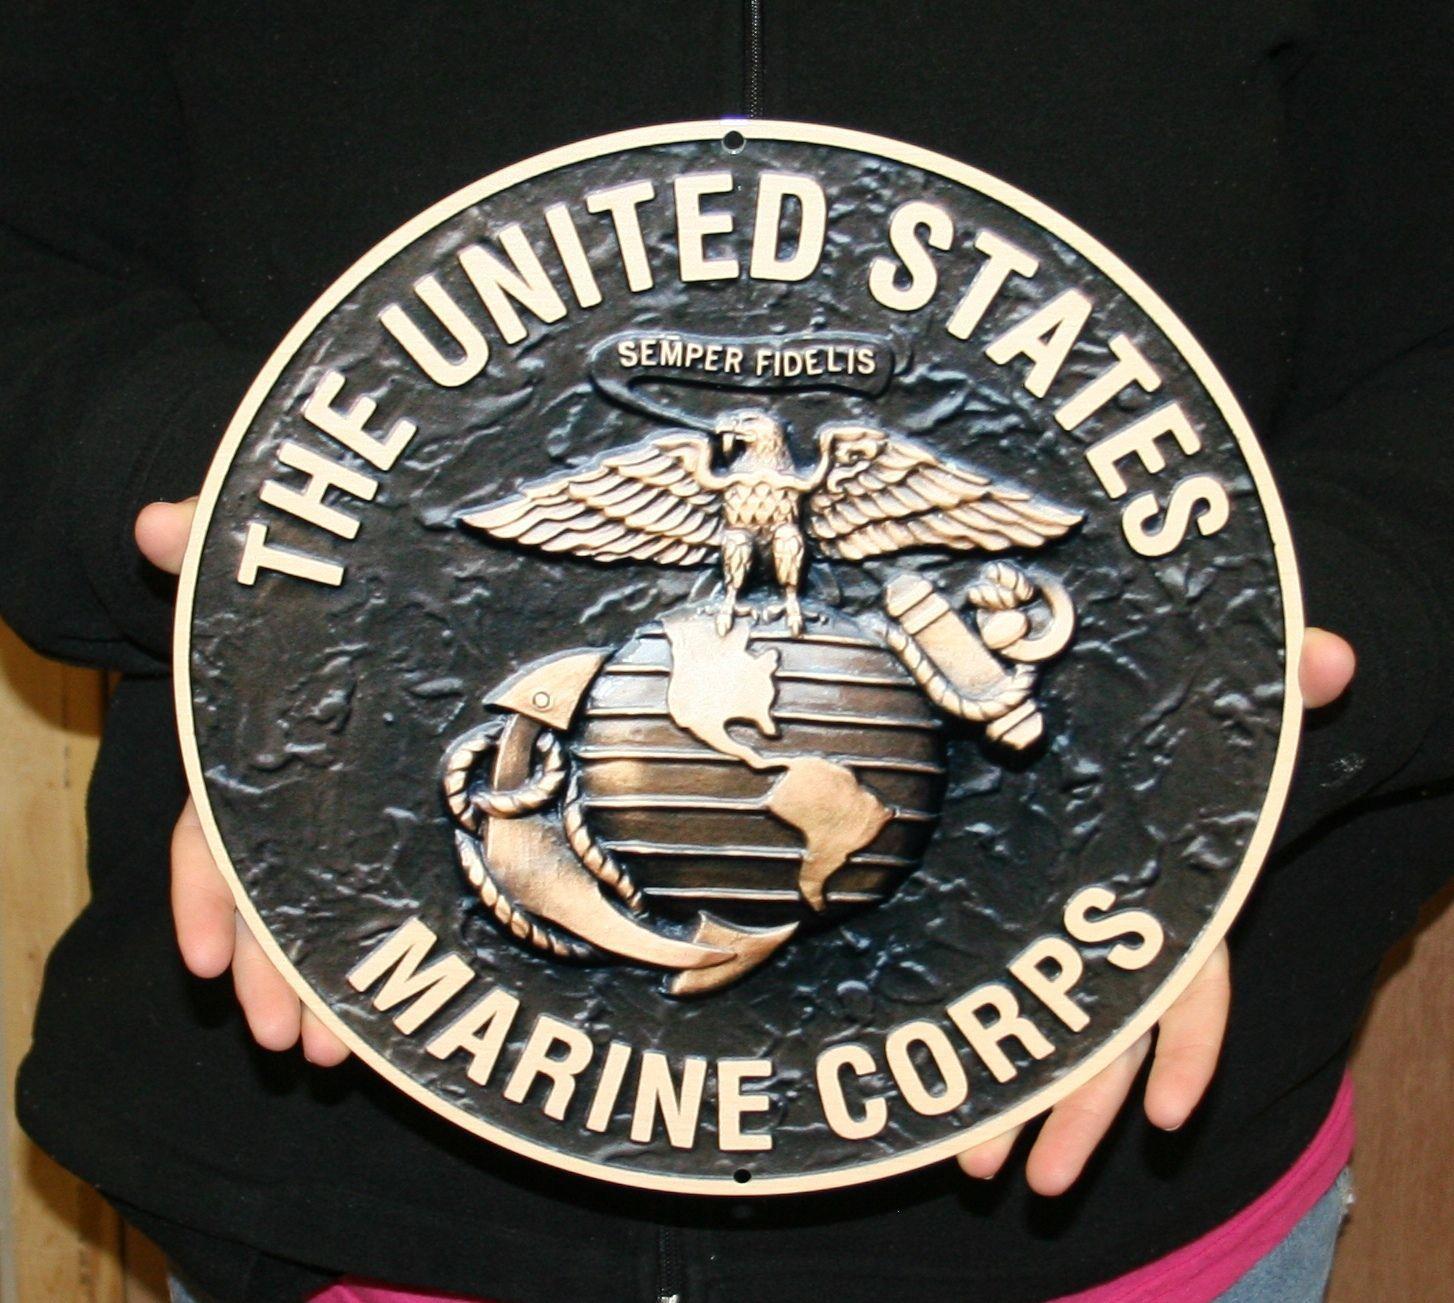 Round Steel Logo - USMC MARINES 12″ BRONZE LOGO ROUND STEEL SIGN | Custom Steel Signs ...